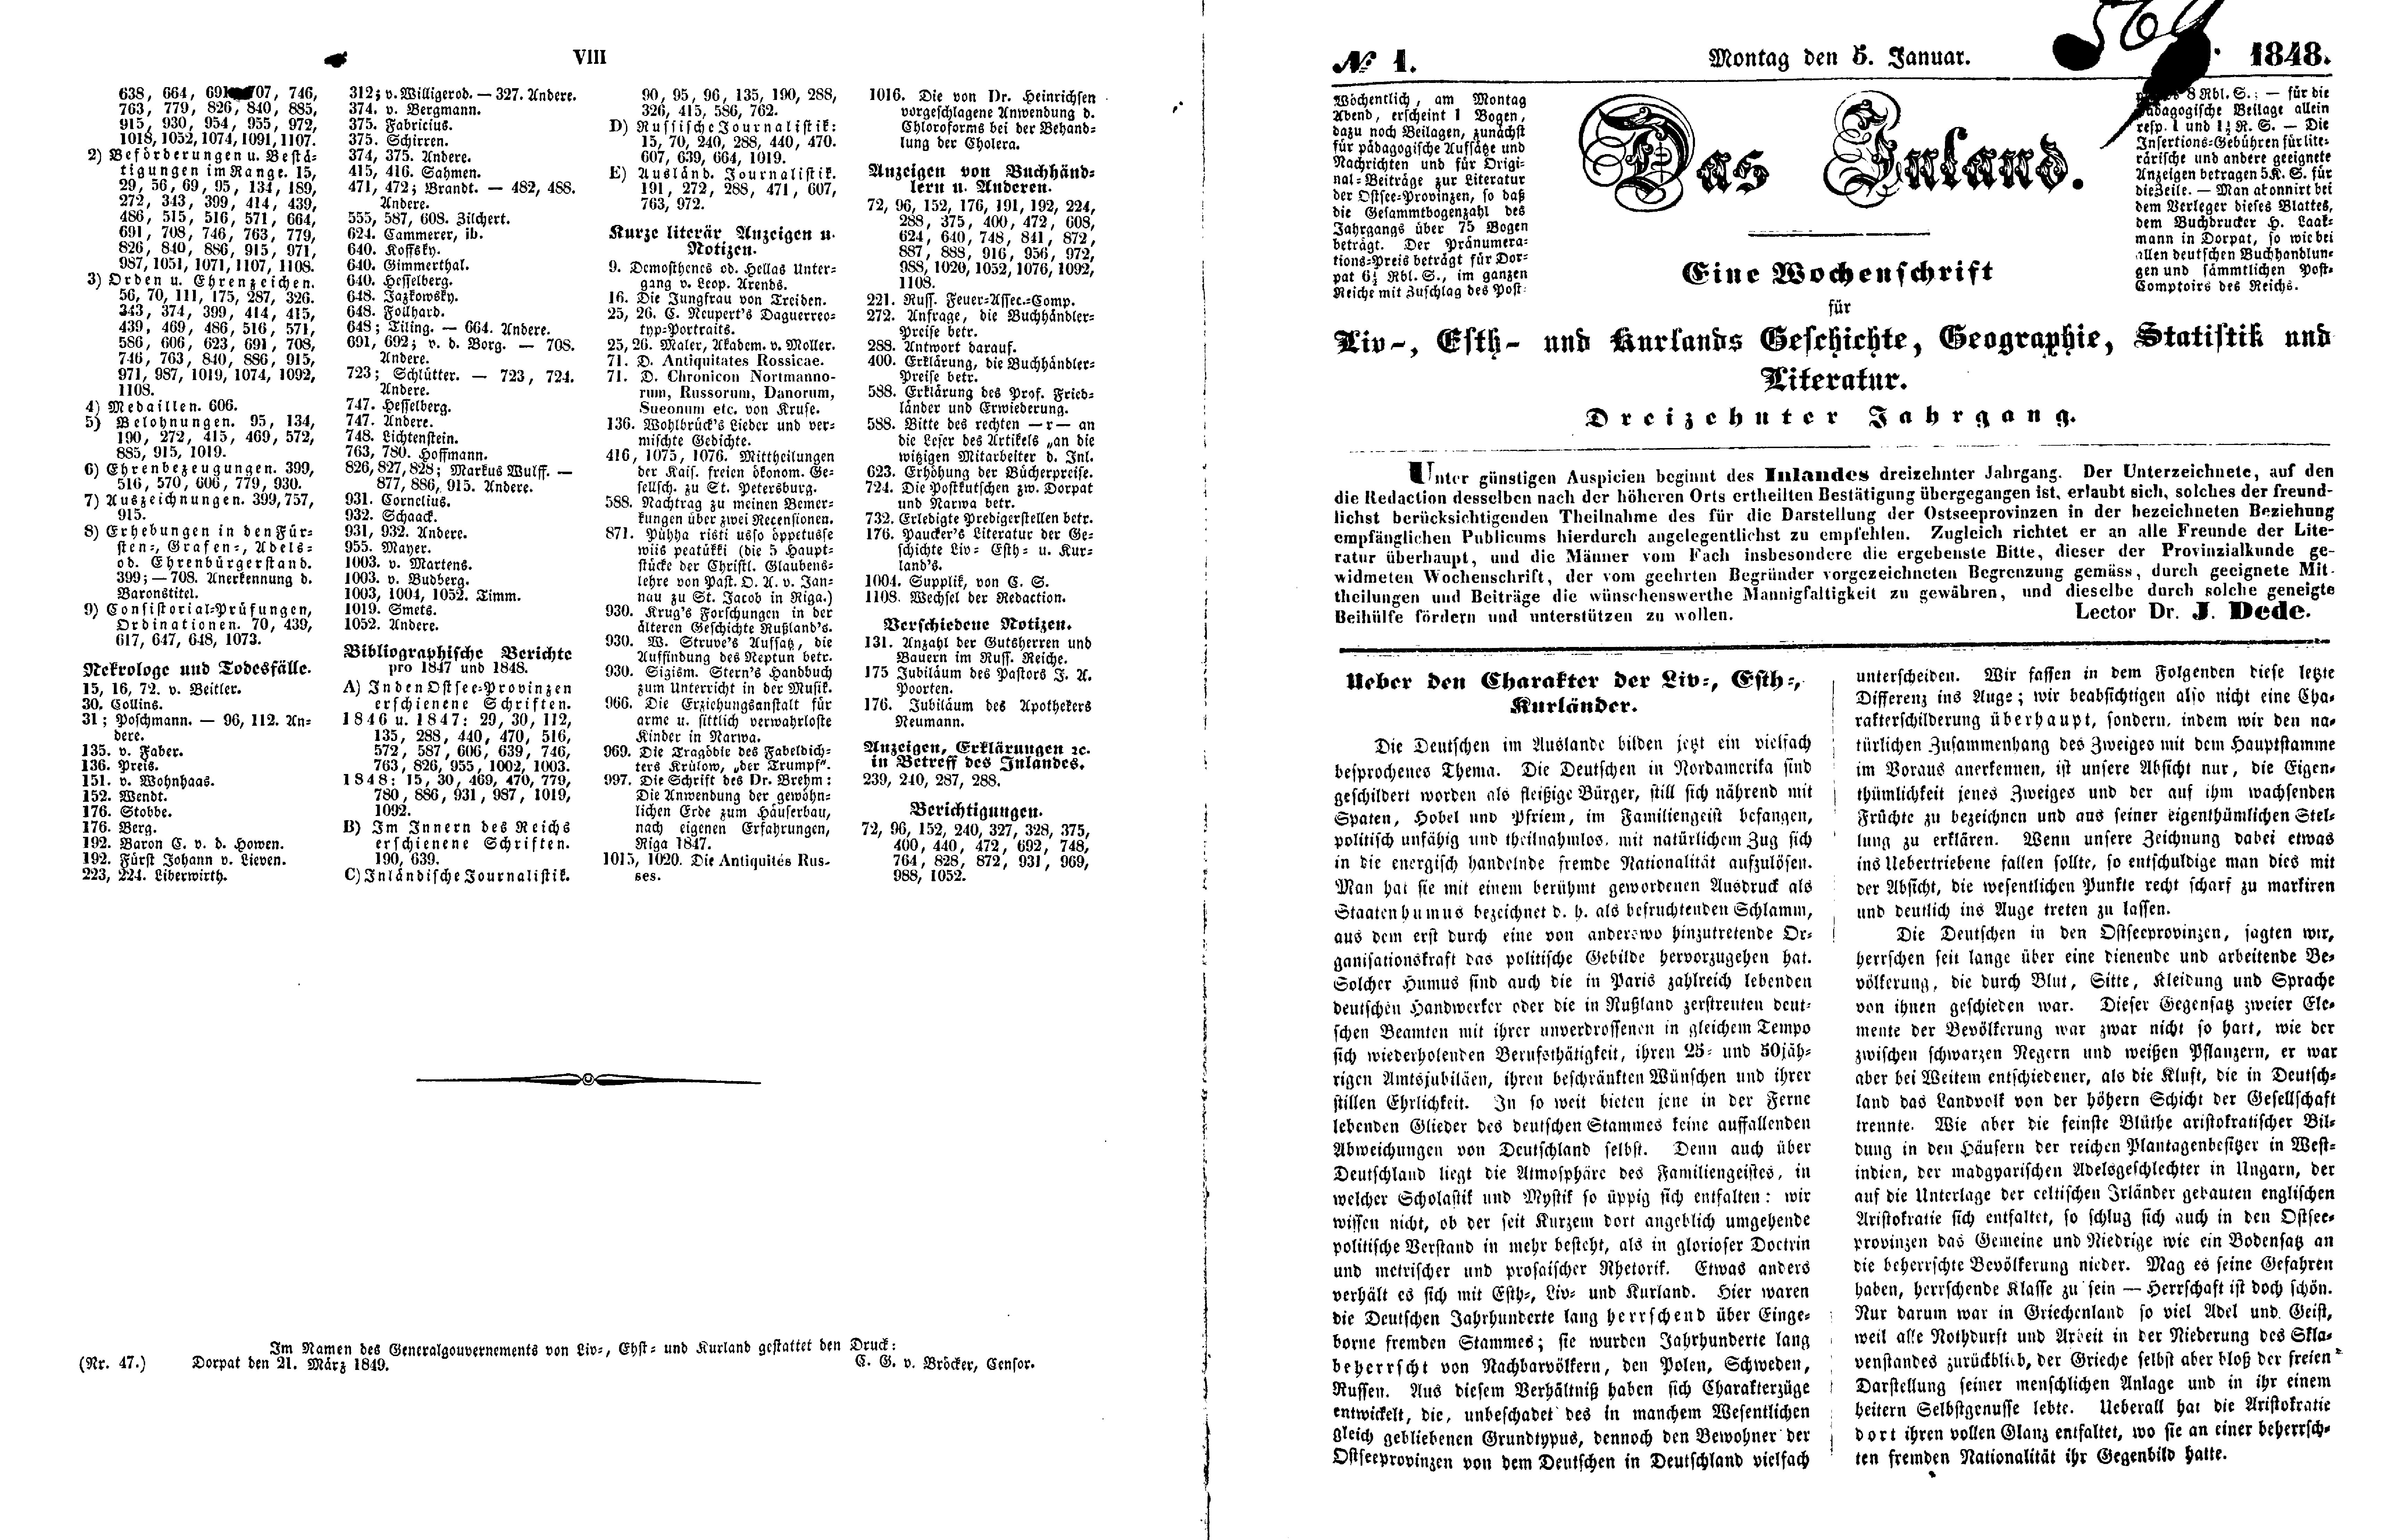 Ueber den Charakter der Liv-, Esth- und Kurländer (1848) | 1. (VIII-2) Register, Haupttext